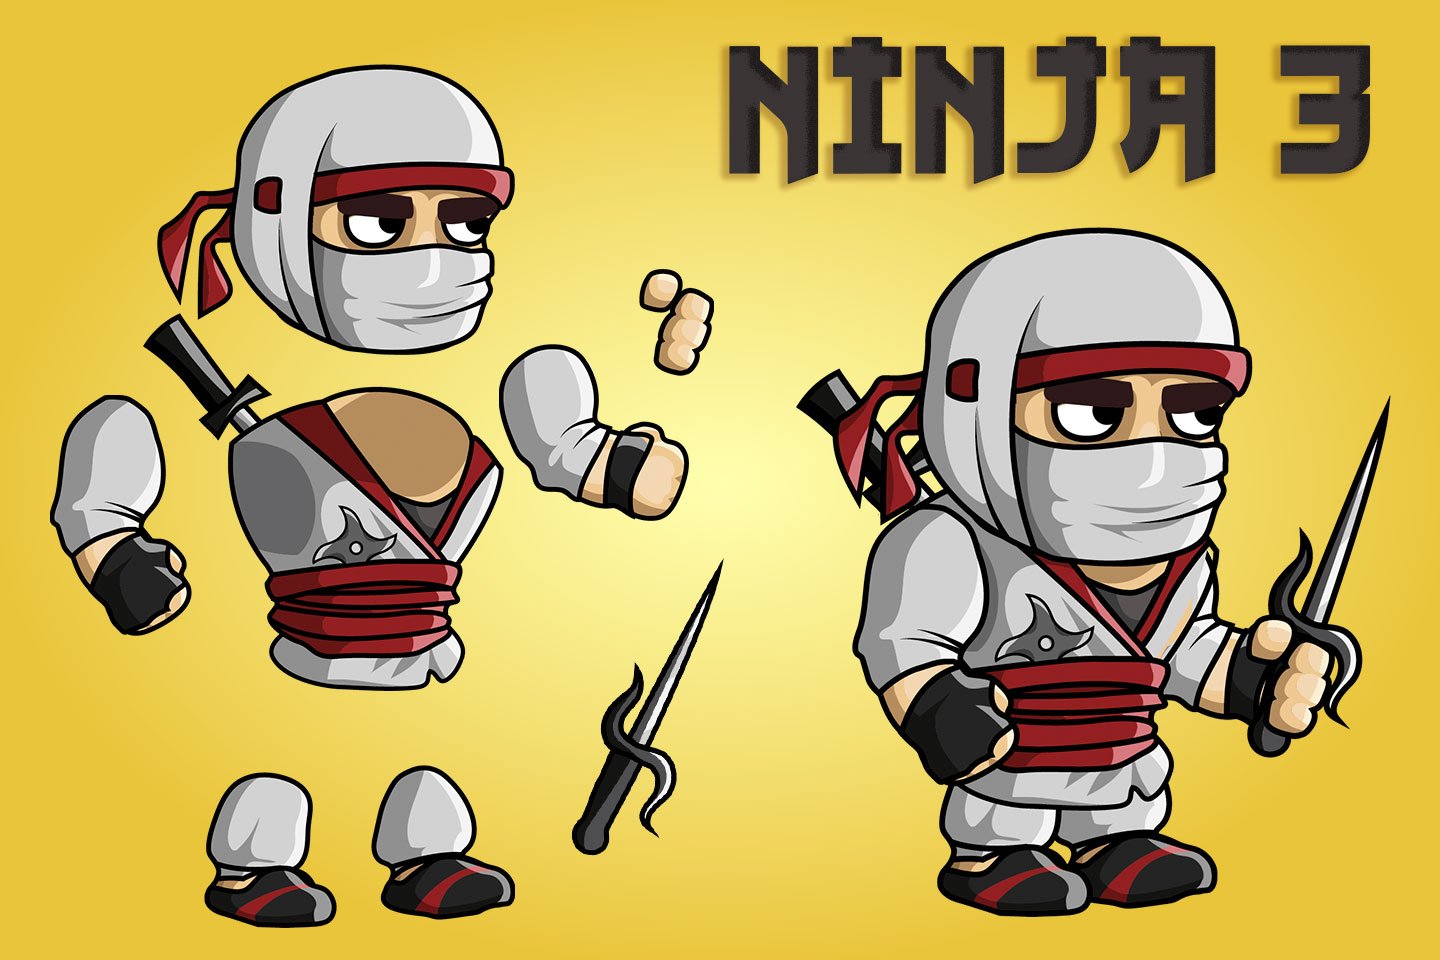 ninja character sprites for rpg maker mv